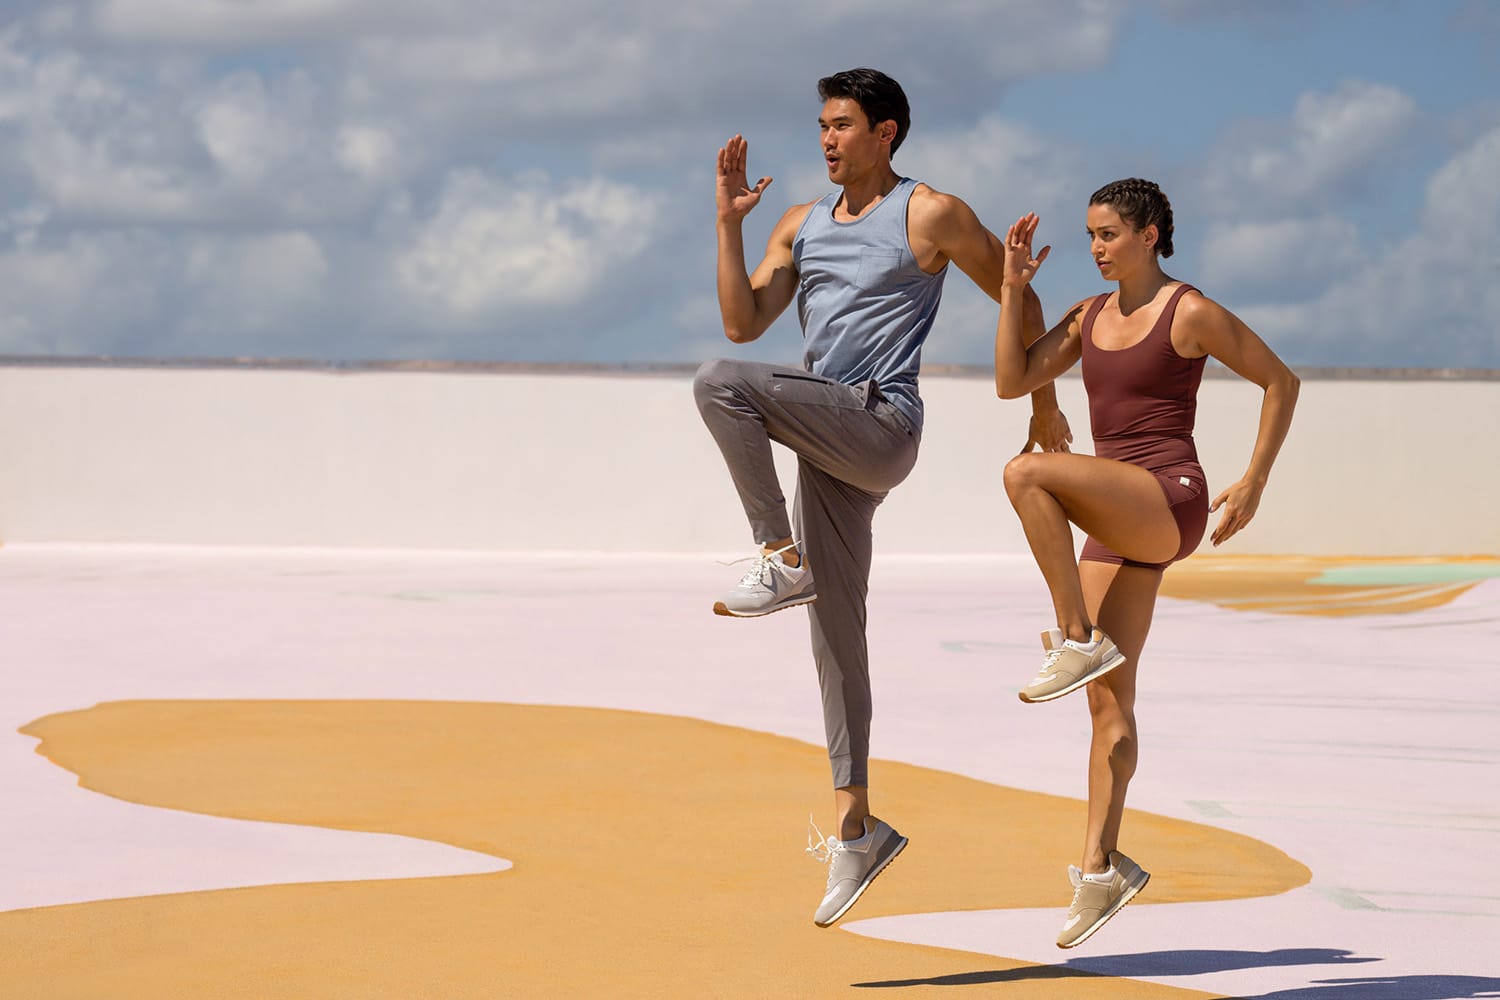 Expanding Vuori Eyes Lululemon, Nike in $546B Activewear Market